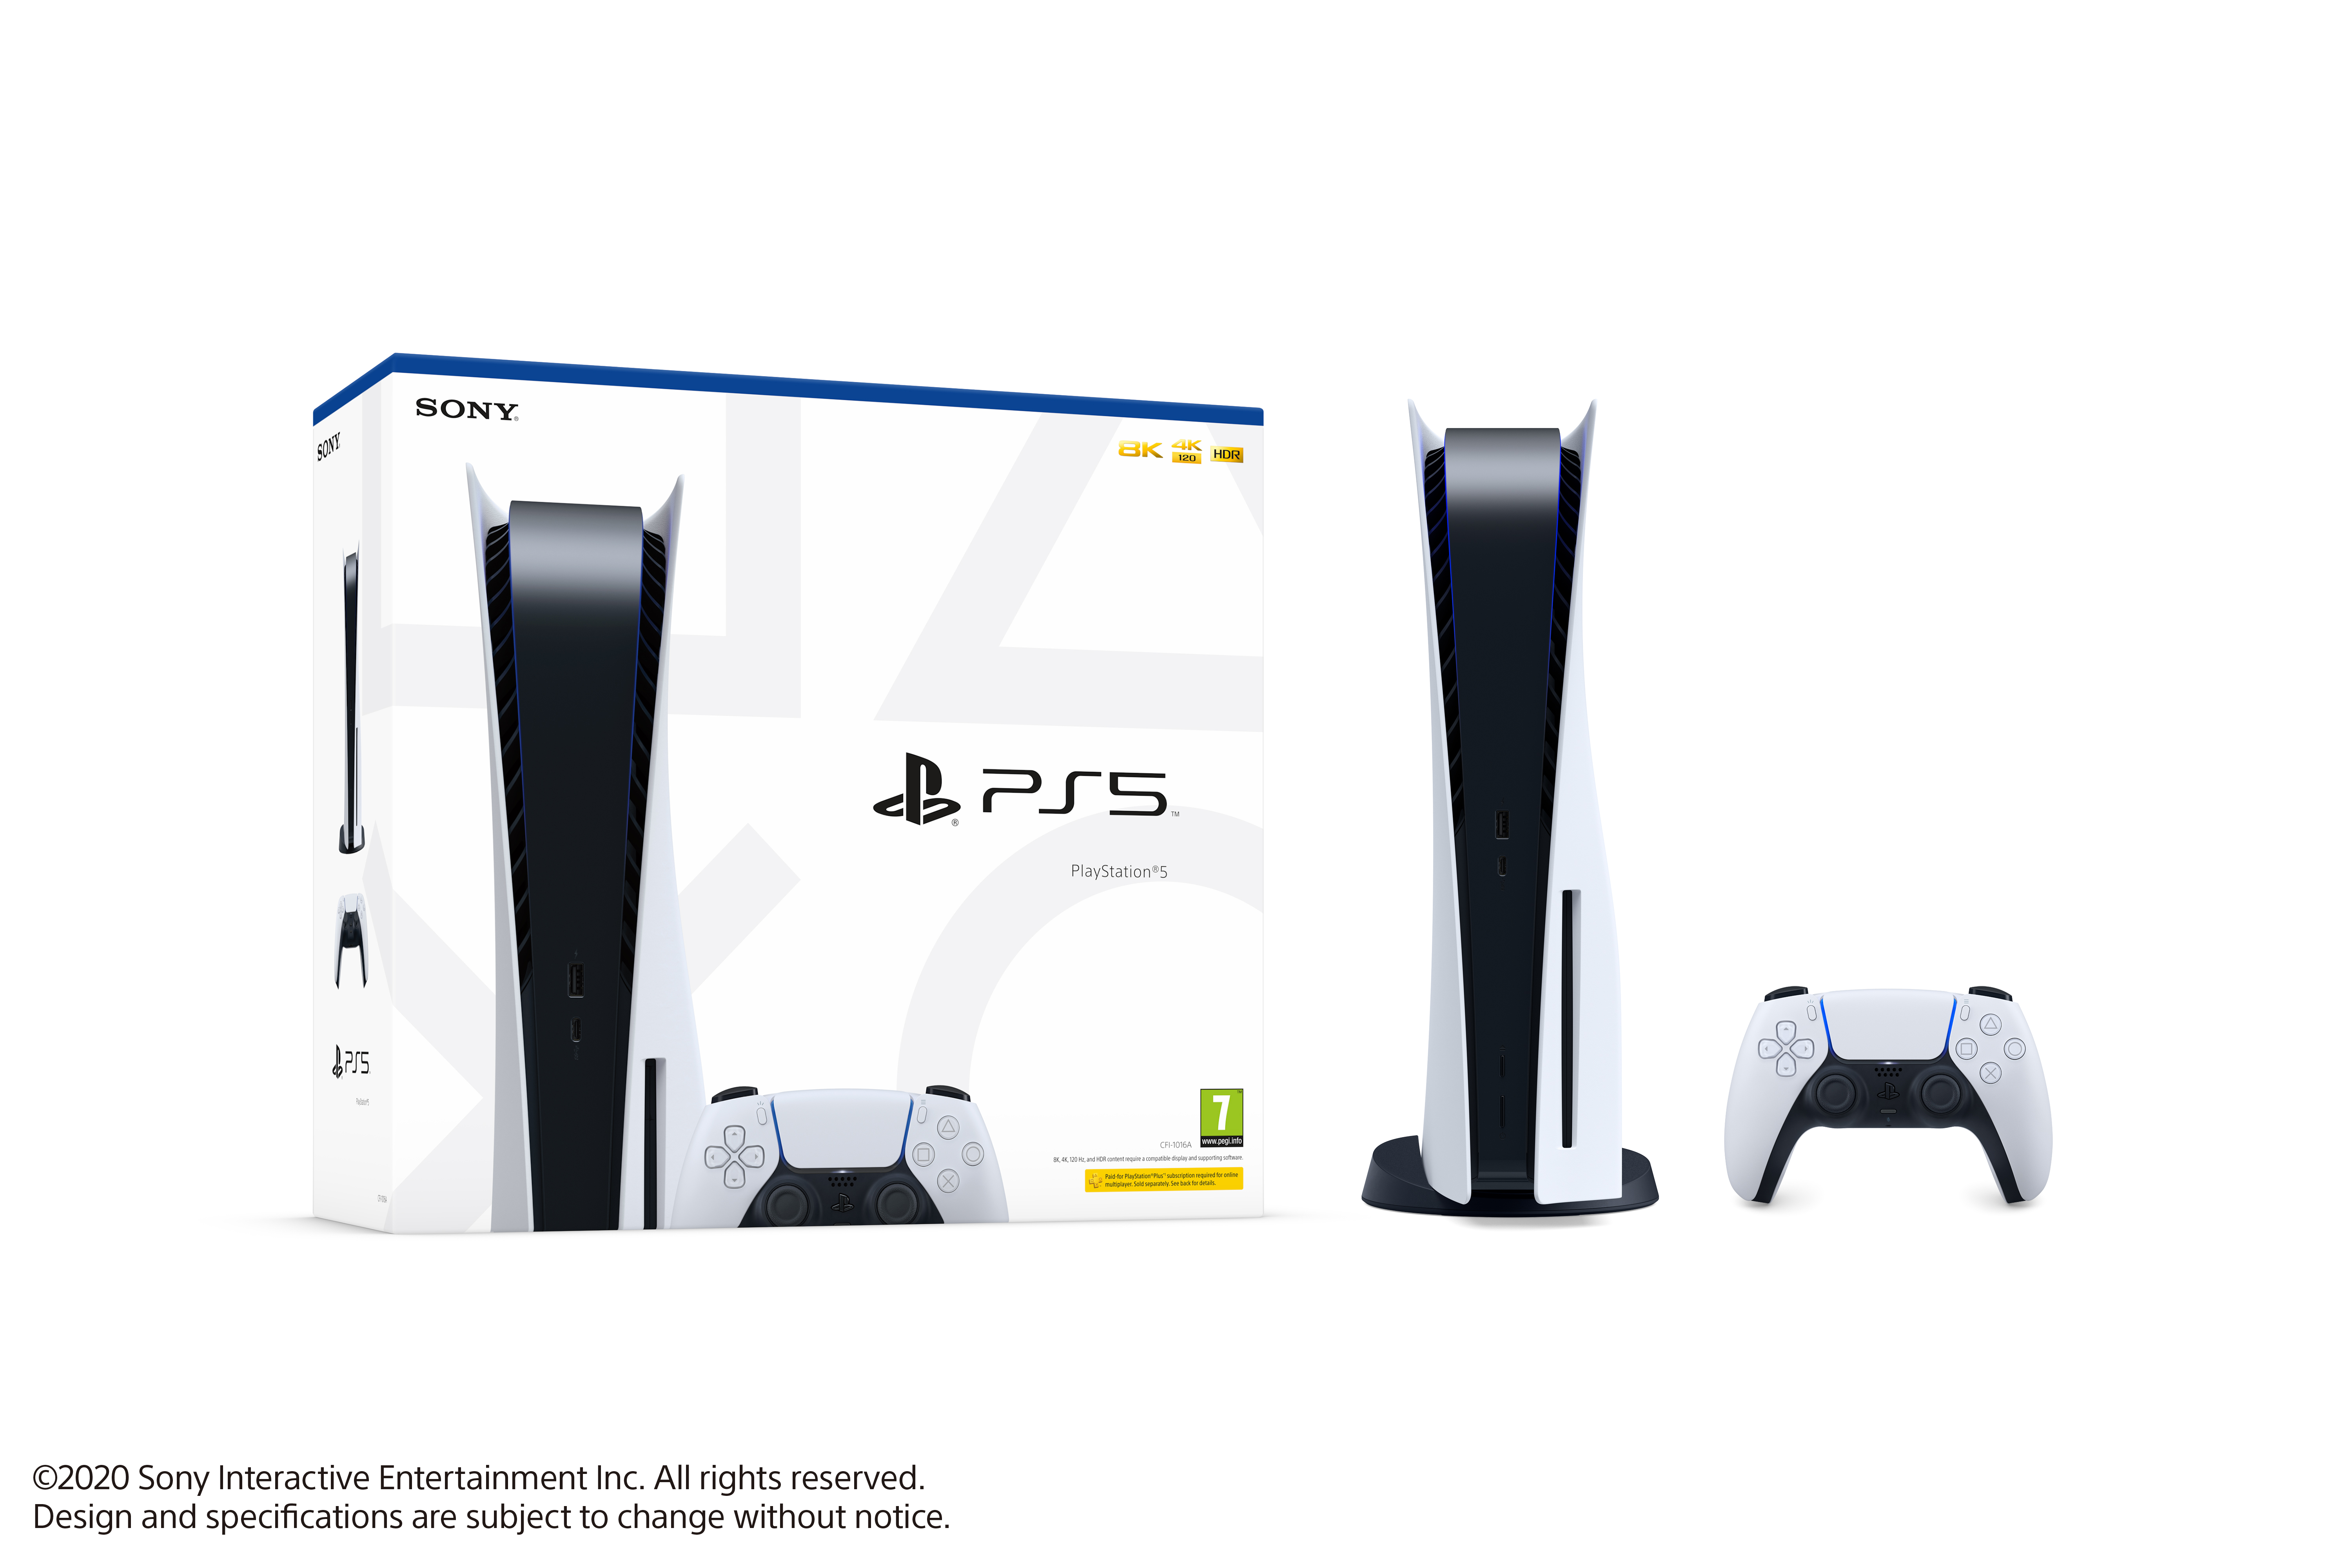 Preço e data de lançamento da PS5 revelados